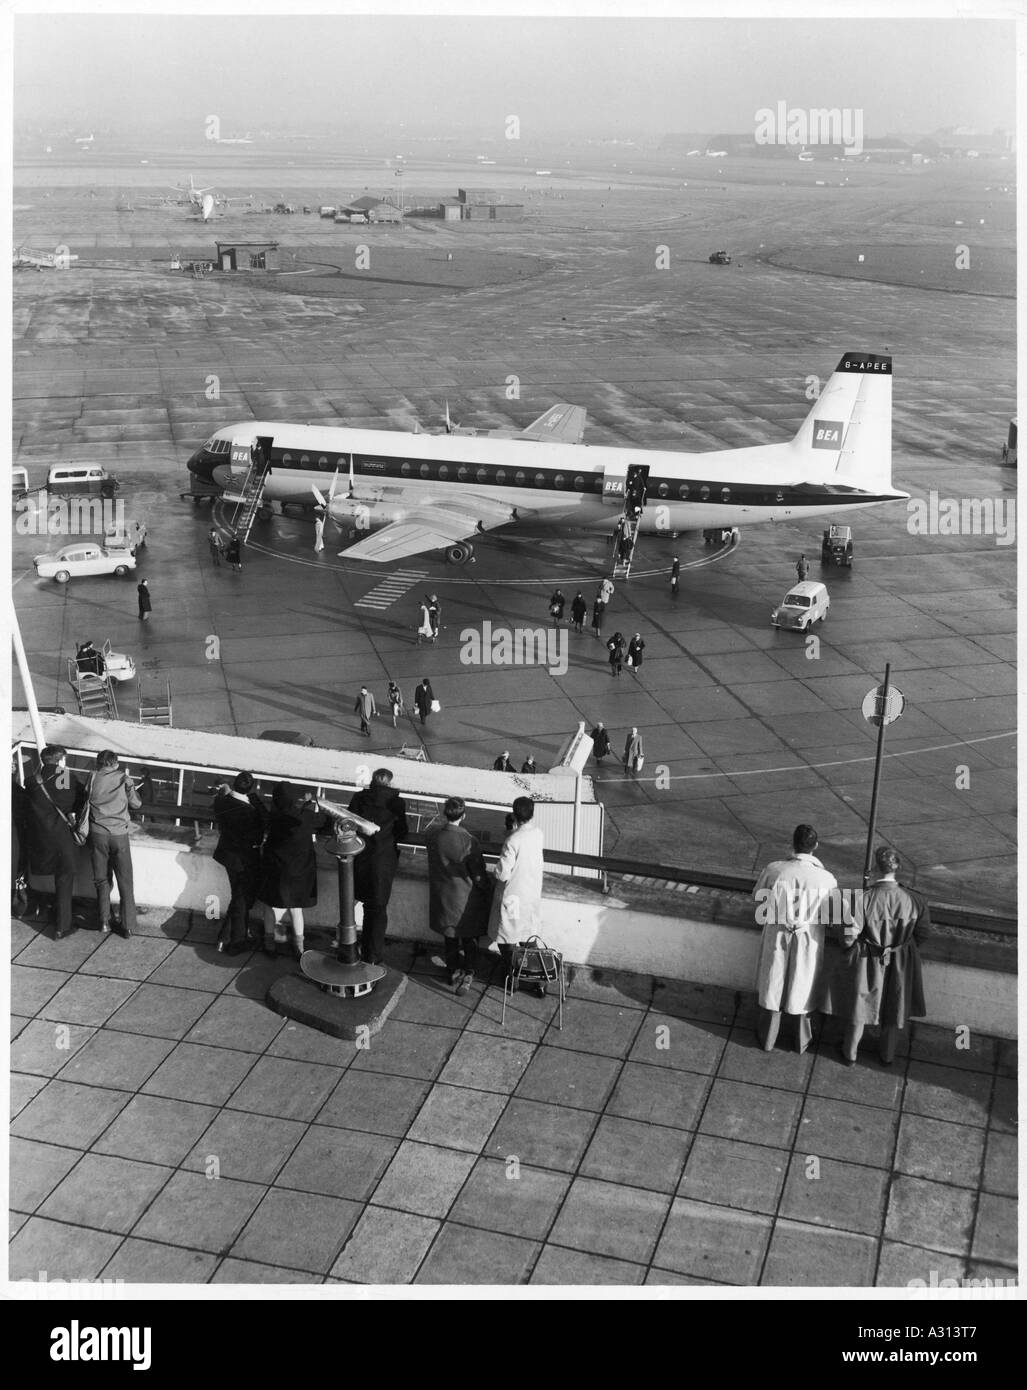 Quitter un avion des années 60 Banque D'Images